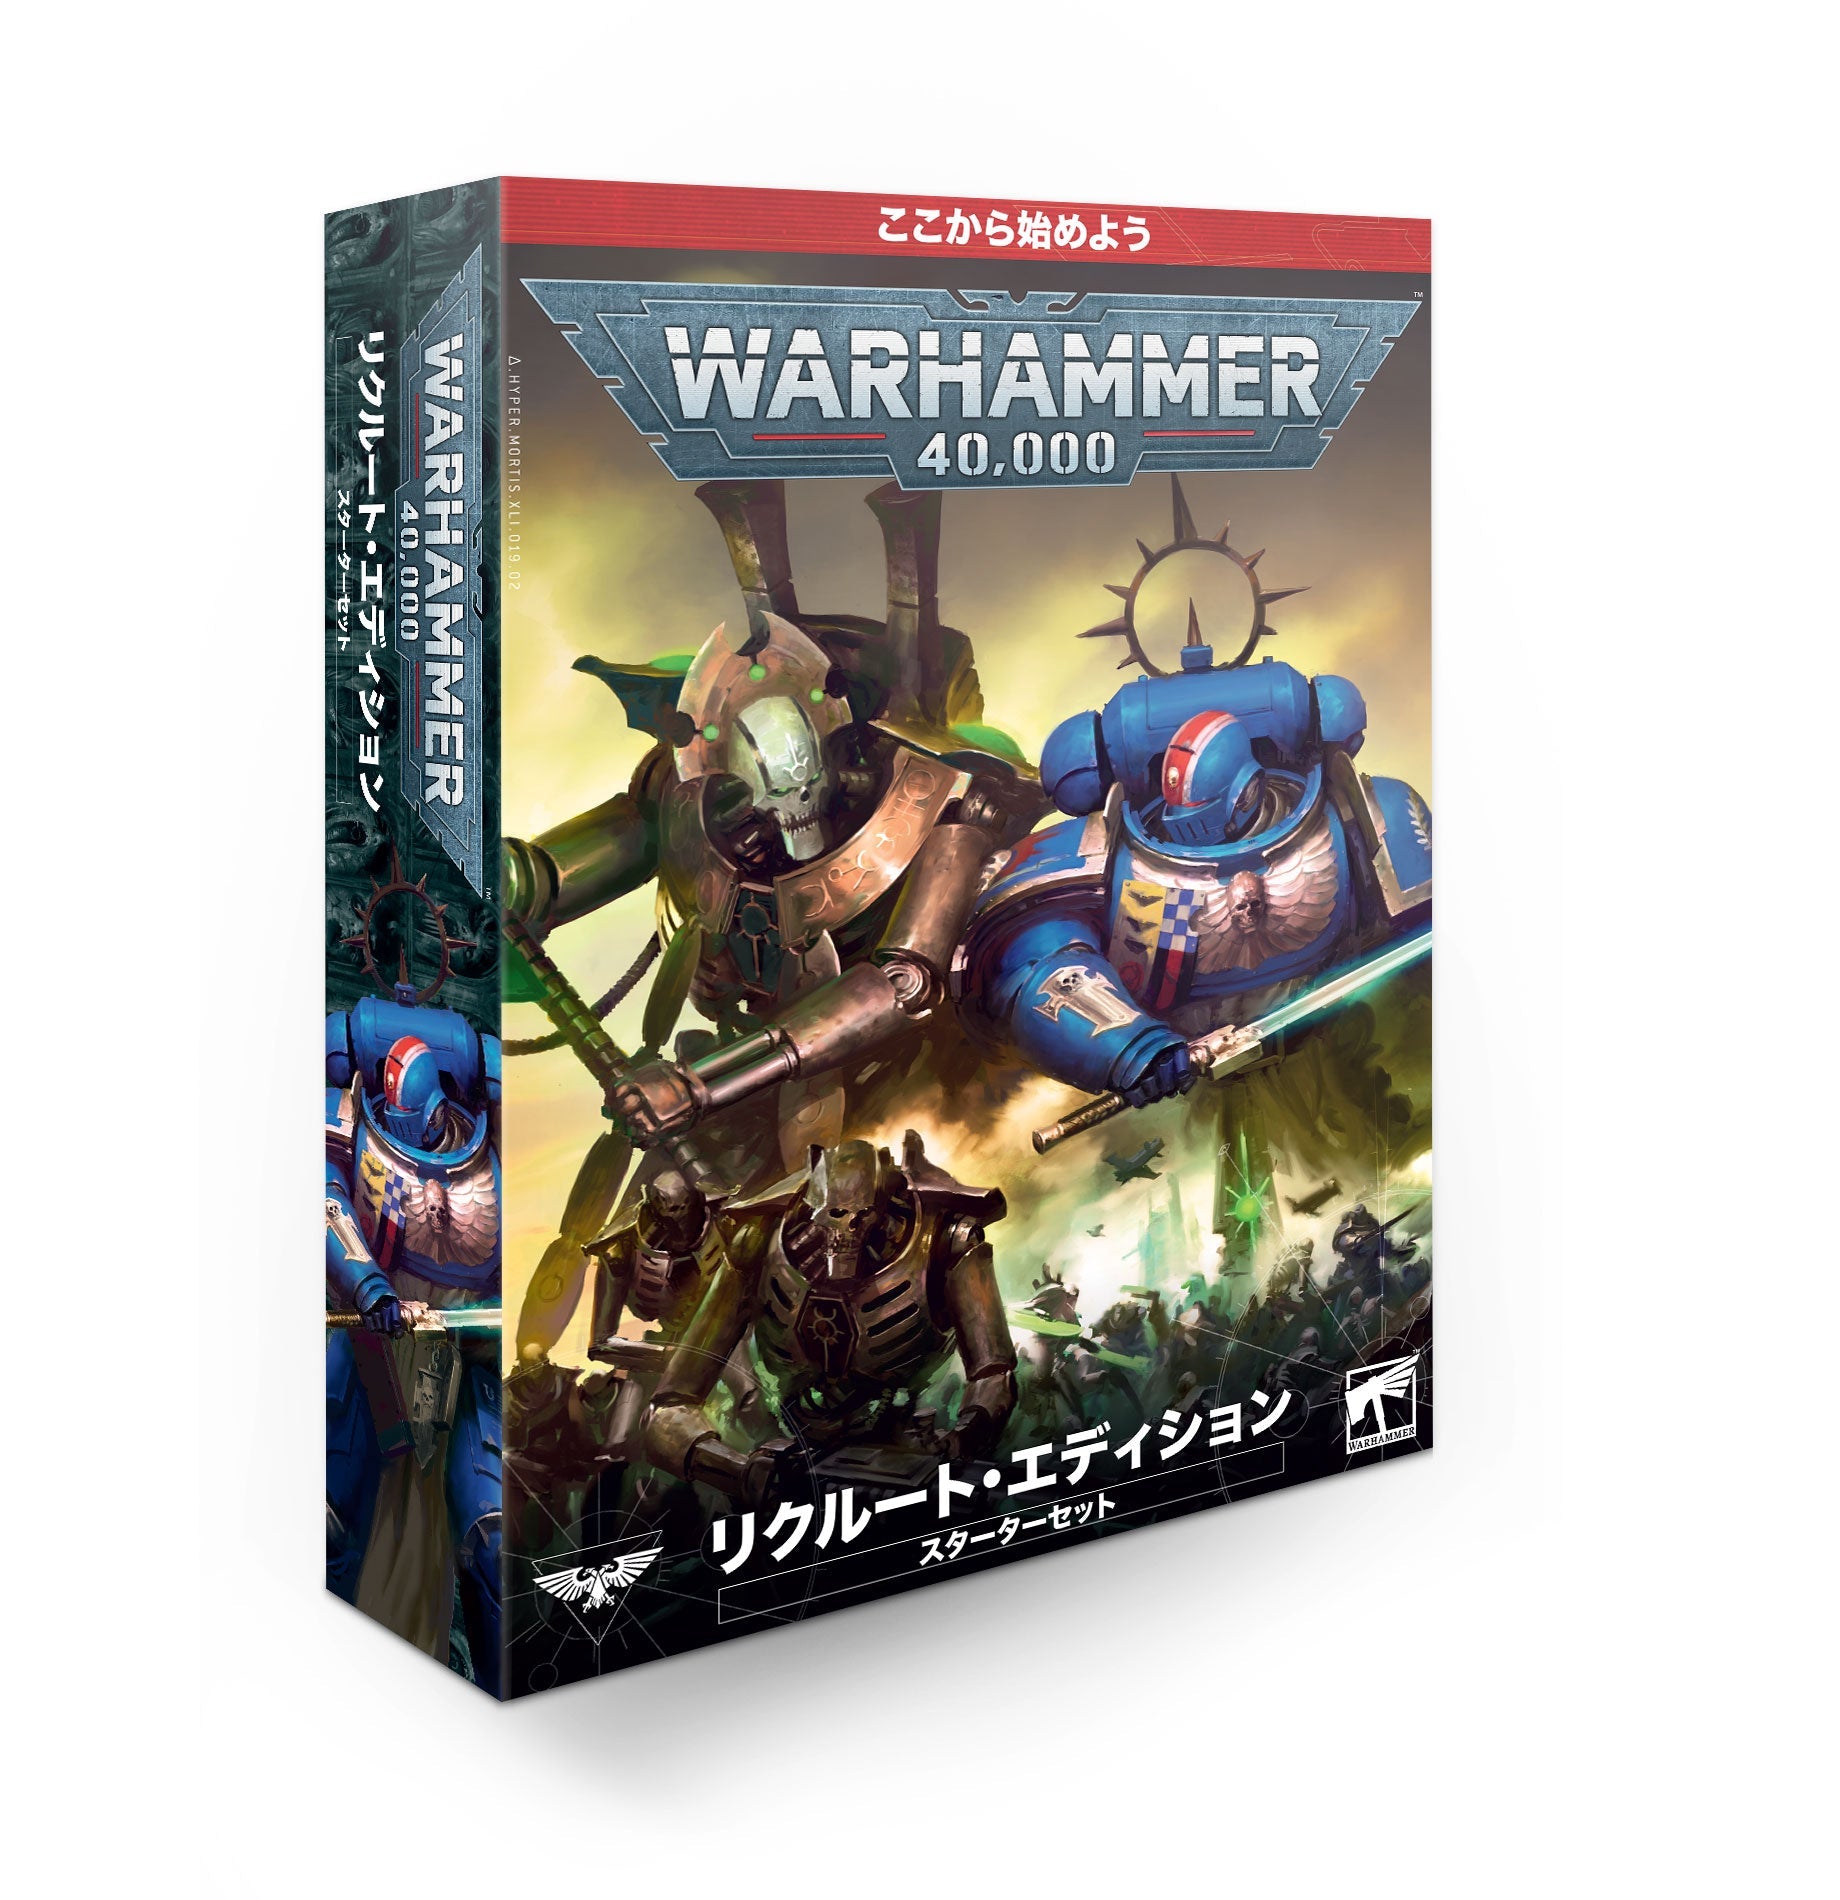 ウォーハンマー Warhammer 40k Ork オーク セット 上質で快適 16750円